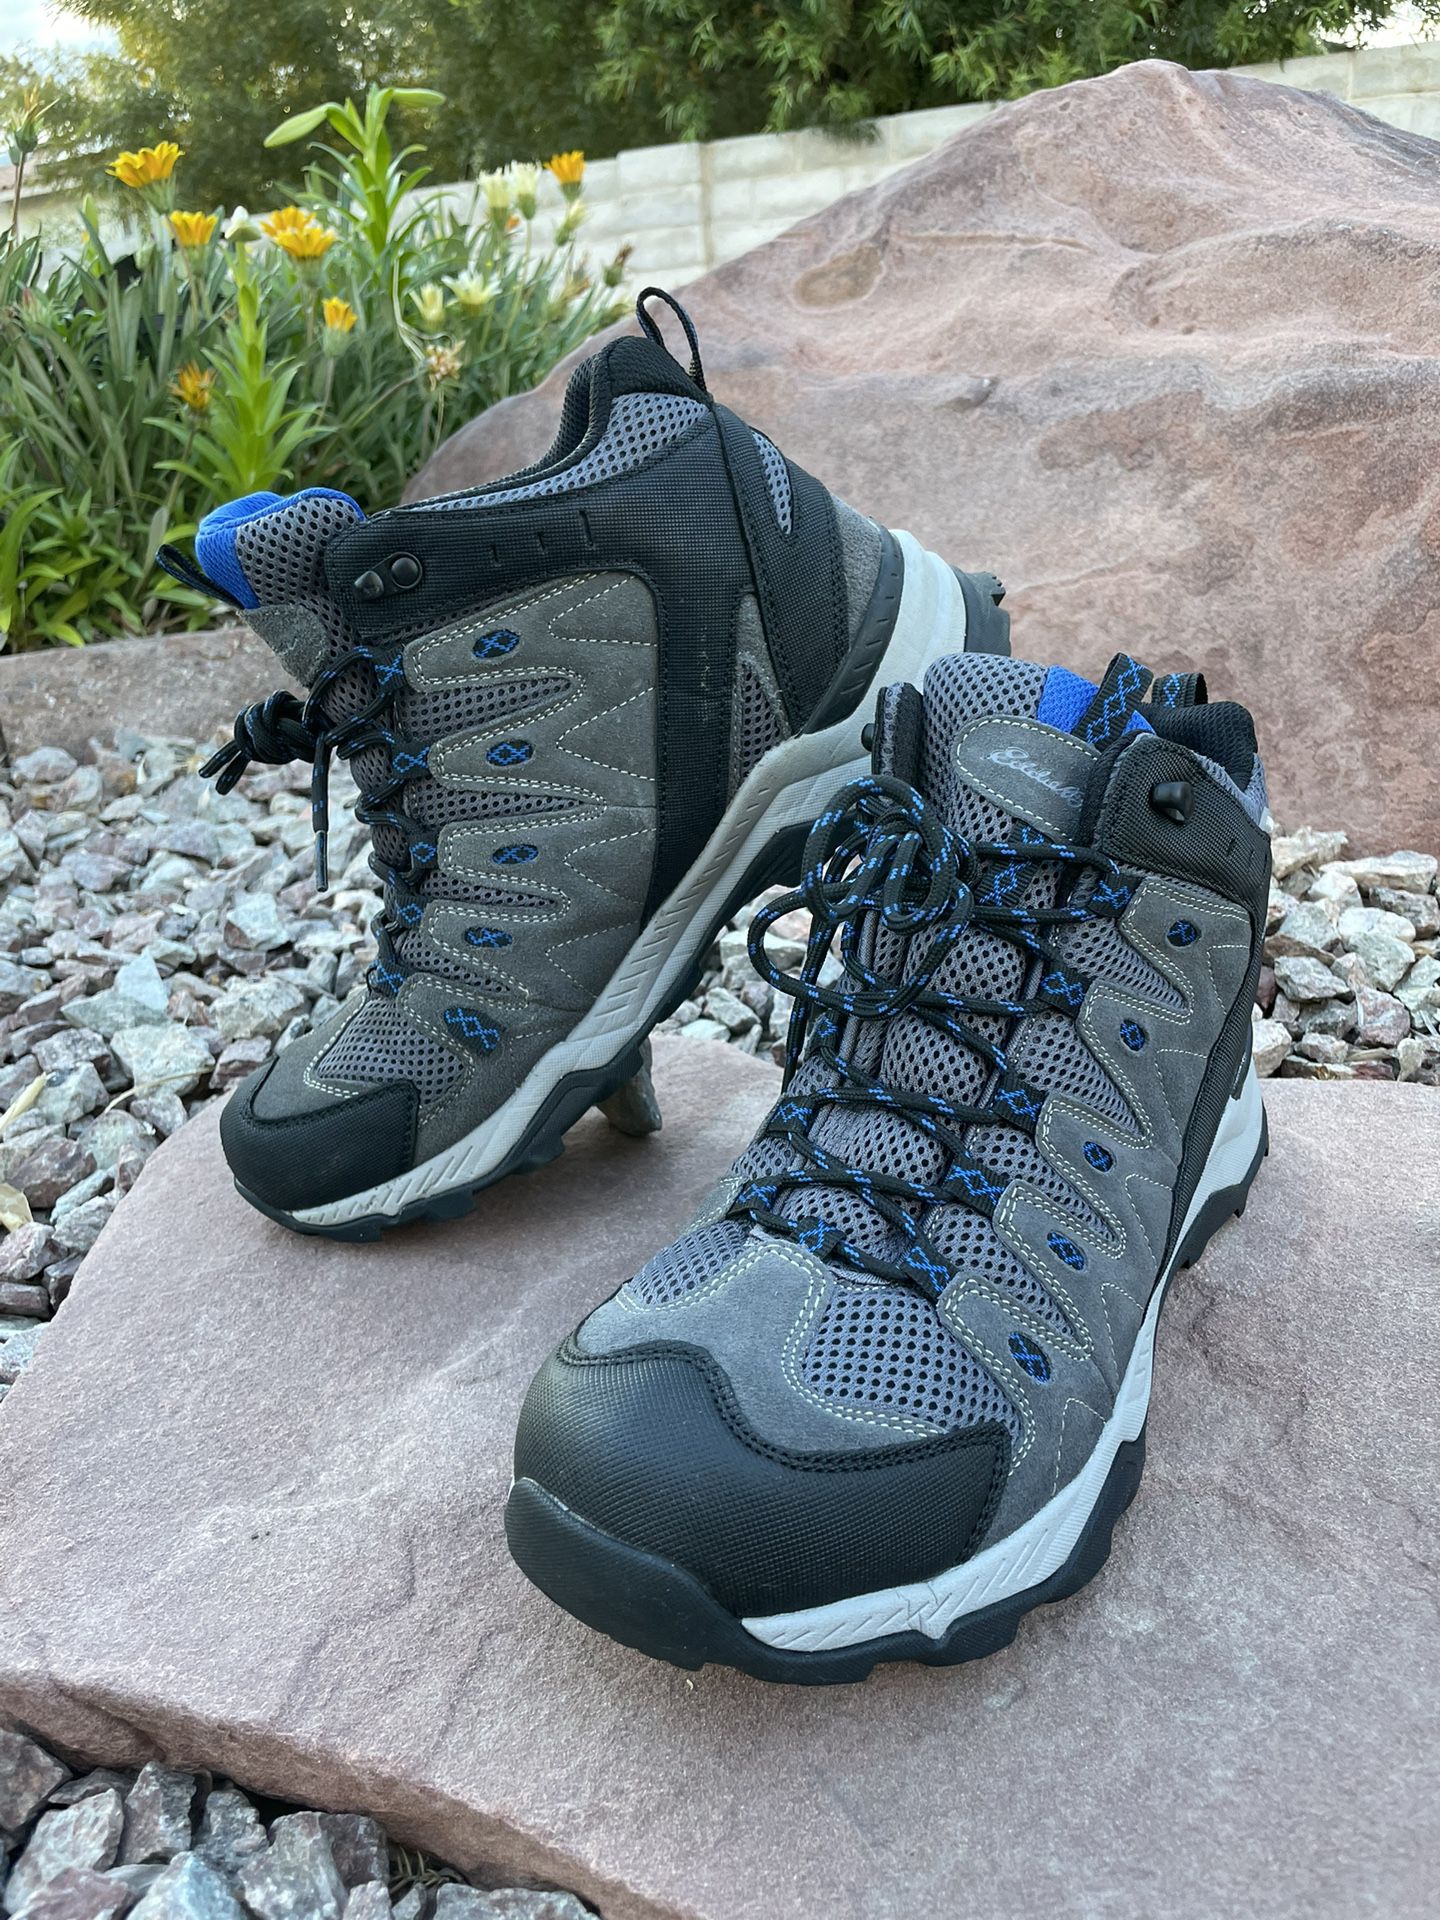 Men's Eddie Bauer Hiking Shoes size 11